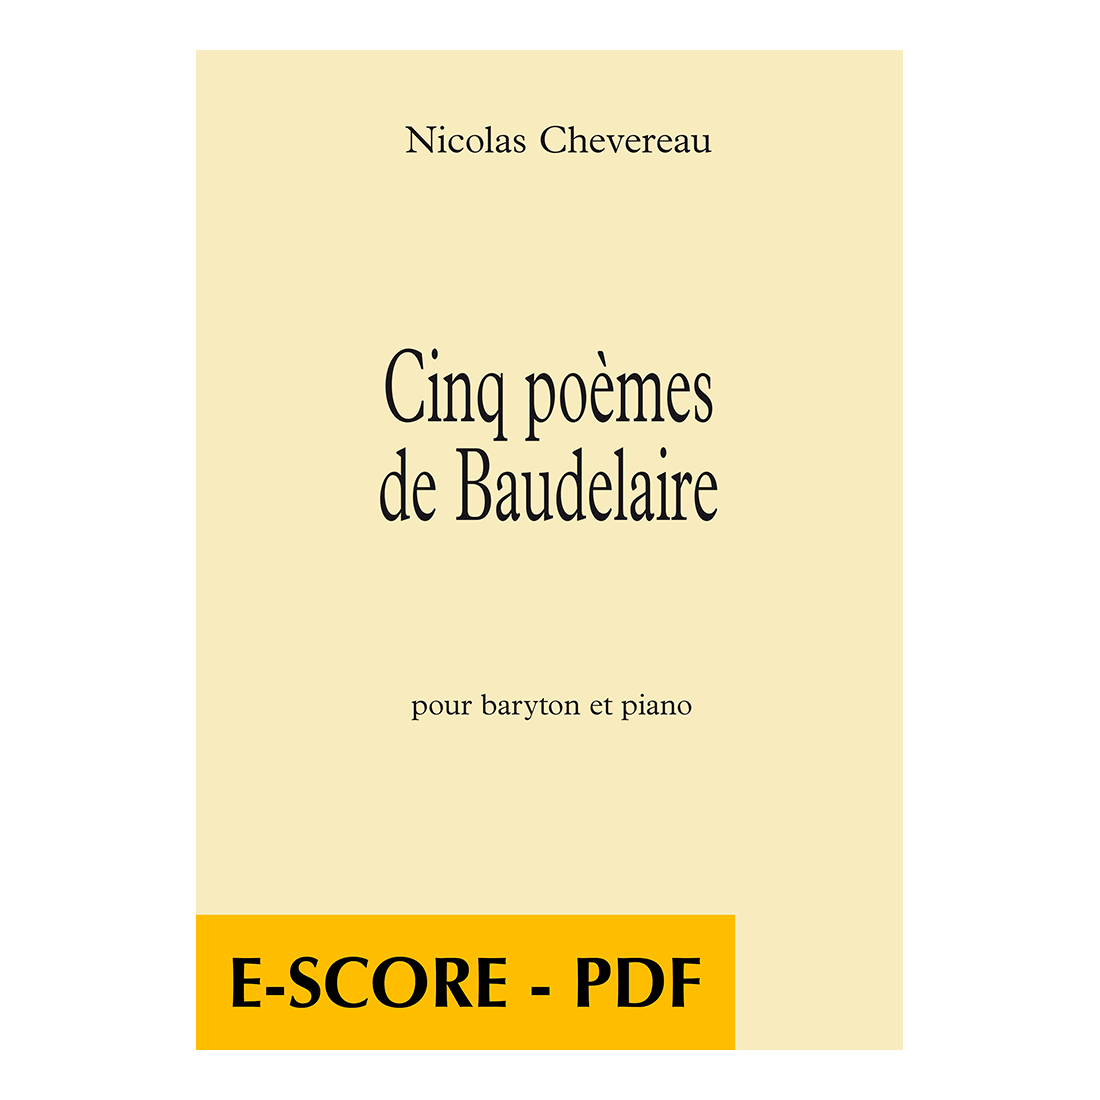 Cinq poèmes de Baudelaire pour baryton et piano - E-score PDF